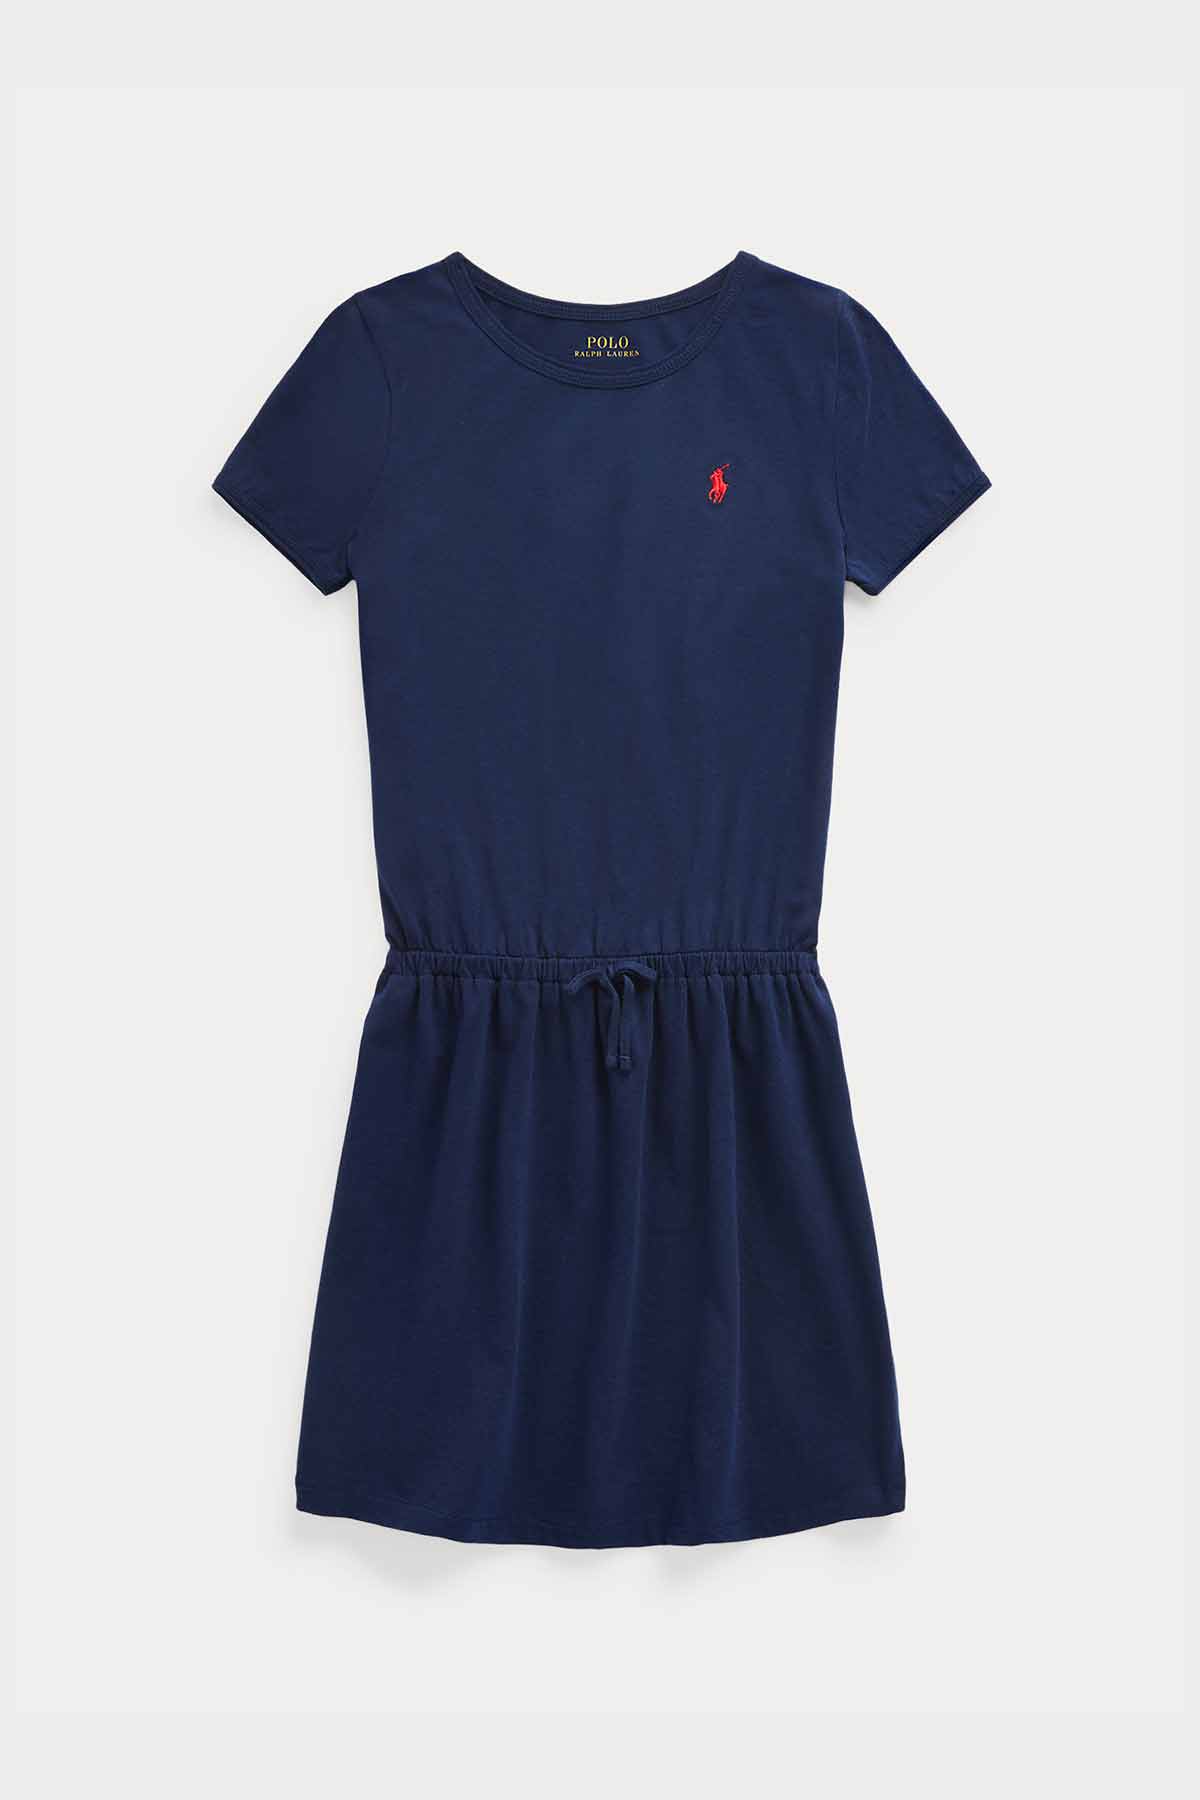 Polo Ralph Lauren S-M Beden Kız Çocuk Belden Büzgülü T-shirt Elbise-Libas Trendy Fashion Store